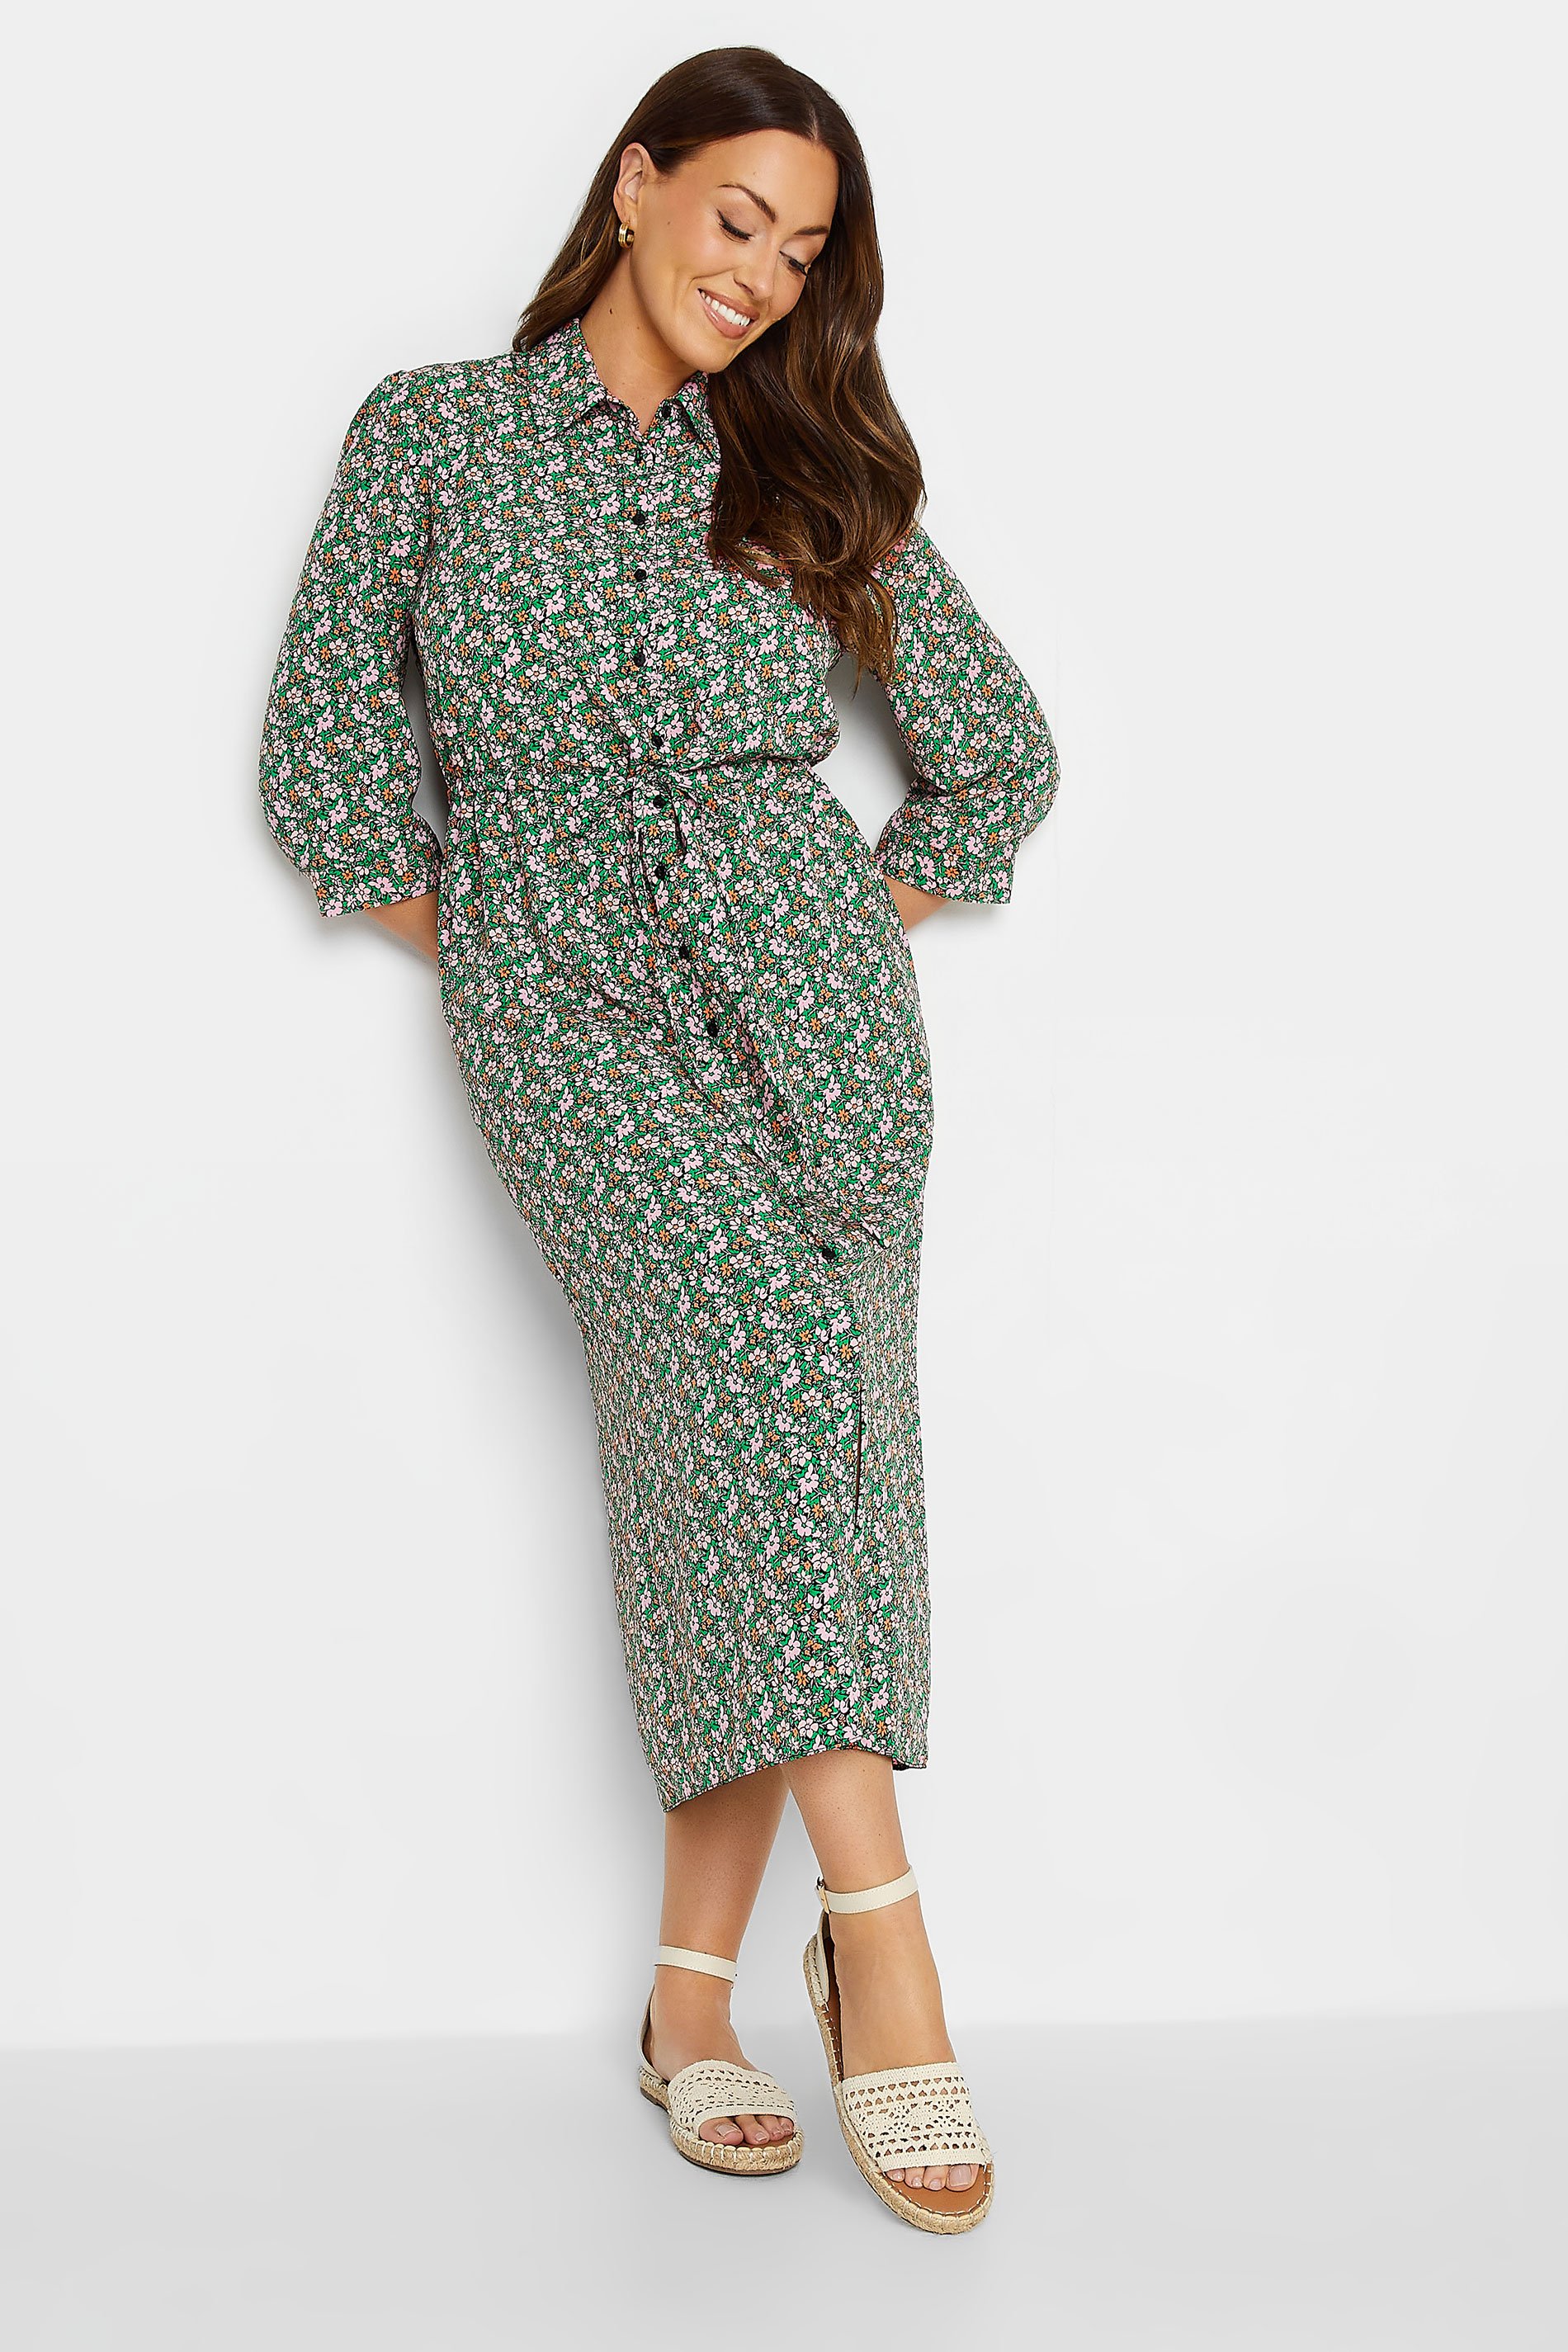 M&Co Women's Green Floral Print Midi Shirt Dress | M&Co 1